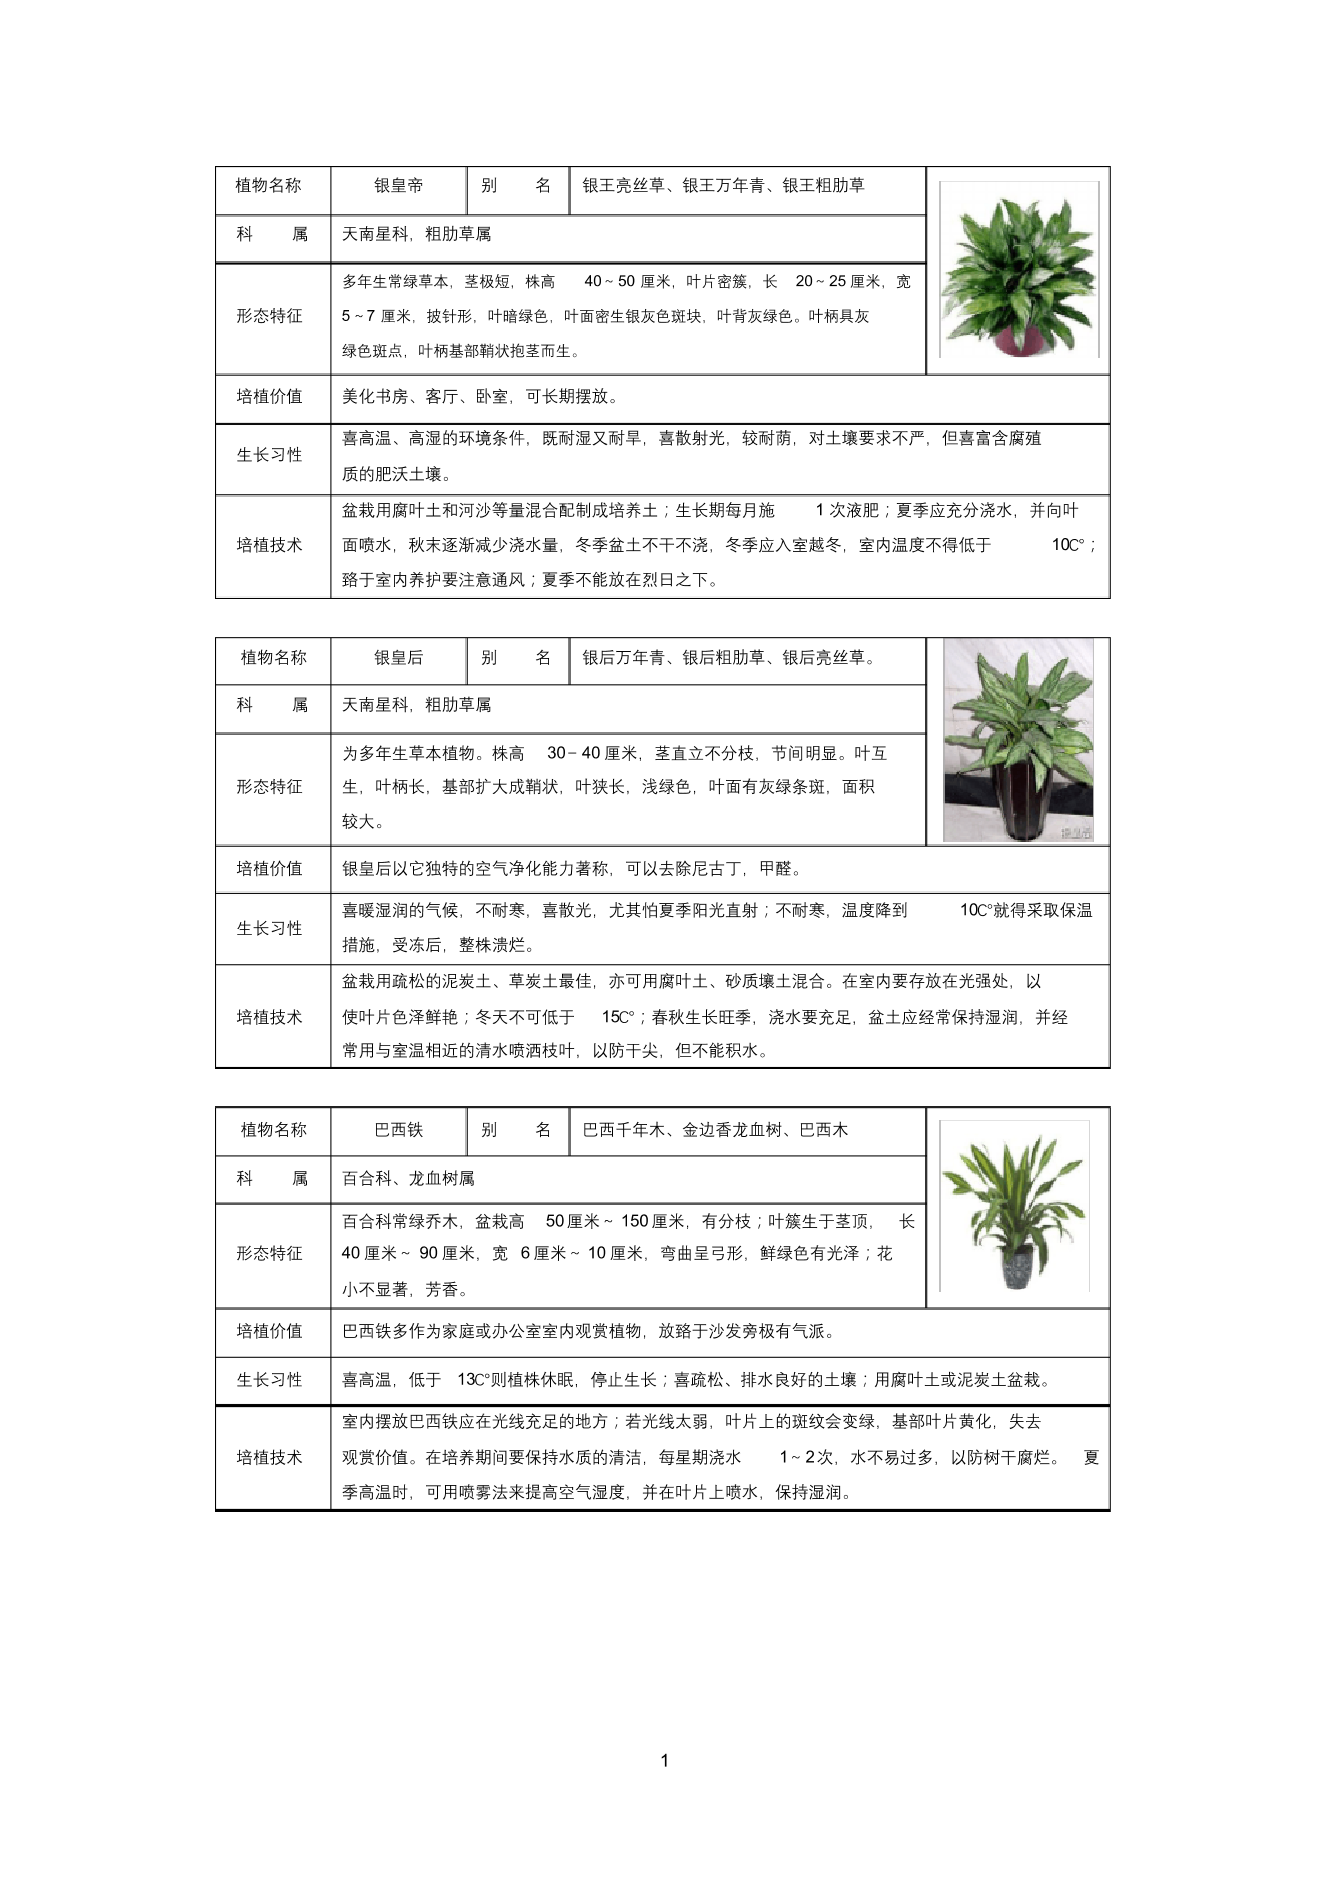 常见室内盆栽绿化植物介绍(带图片)-免费常见室内盆栽绿化植物介绍(带图片)-免费_1.png